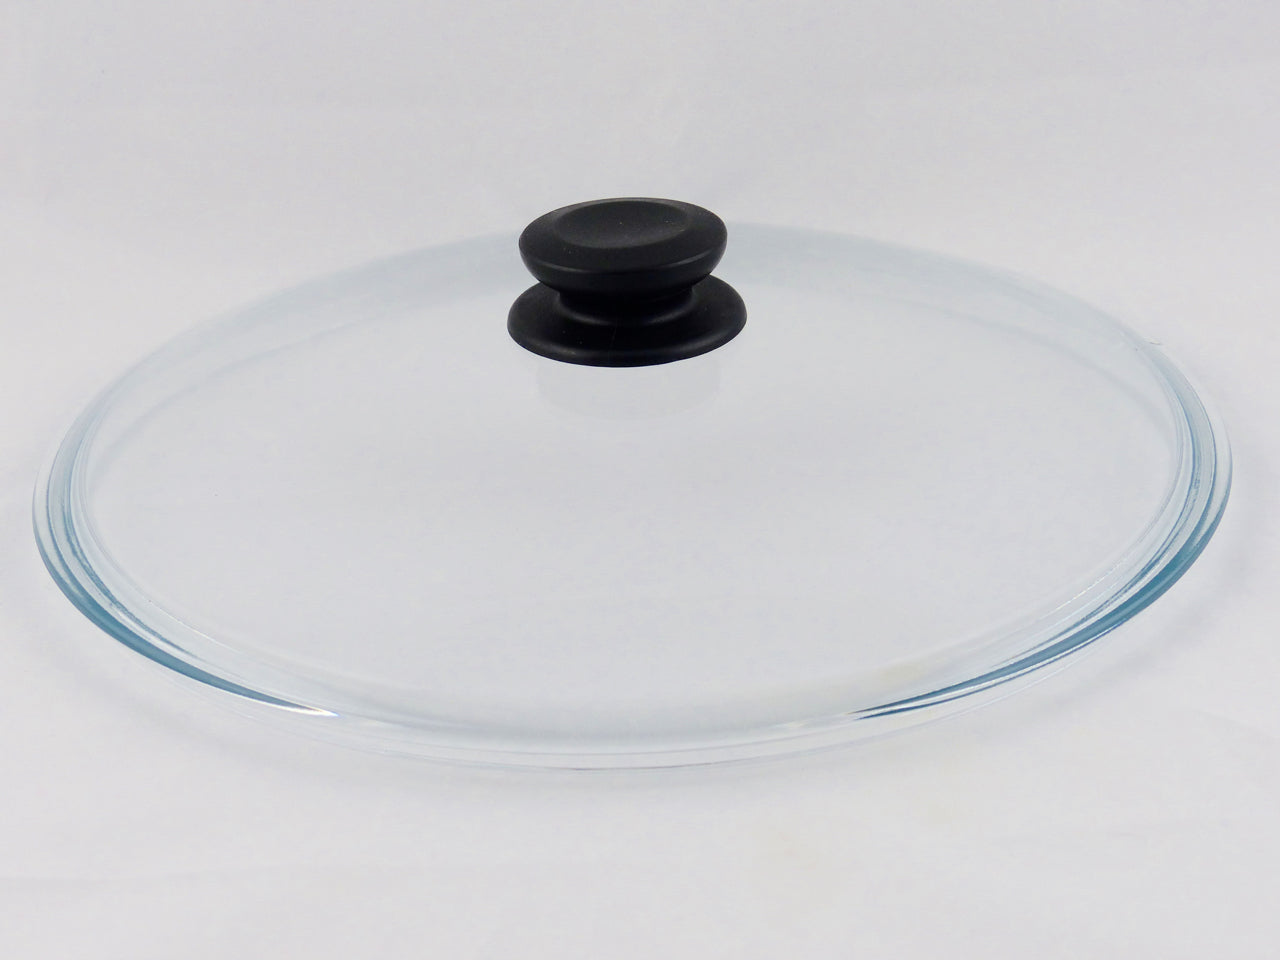 Zu sehen ist ein Pressglasdeckel aus Borosilikatglas. Er trägt einen schwarzen Knopf aus Bakelit.